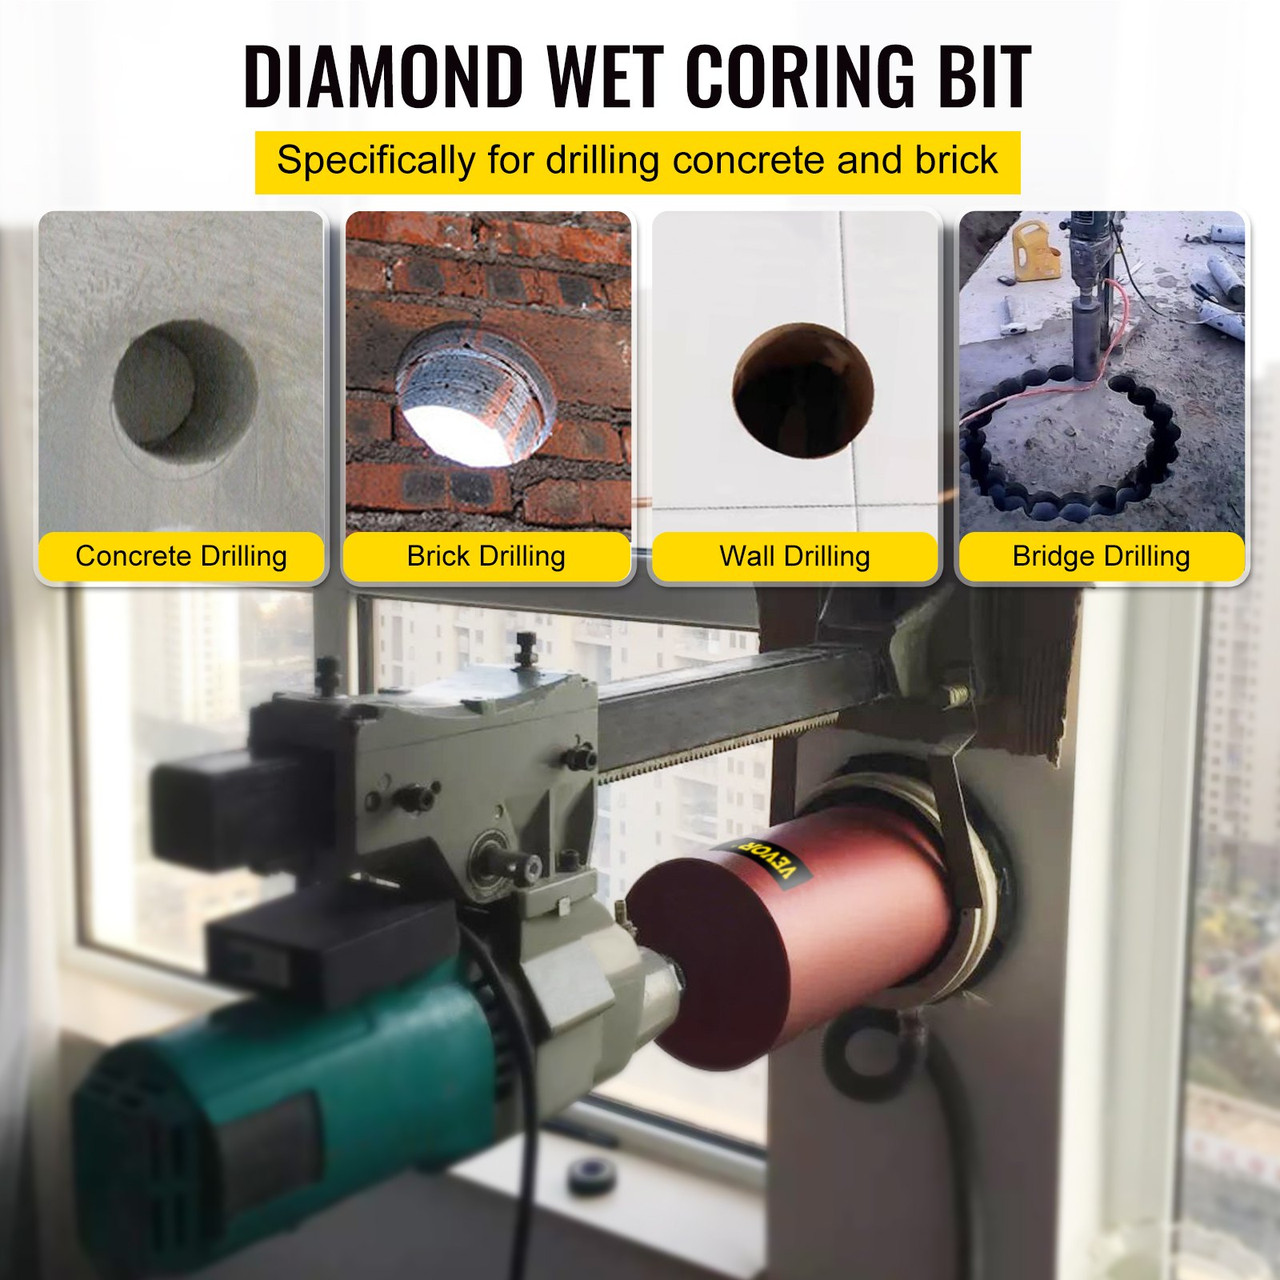 Diamond Core Drill, 6"/152mm Diameter Core Drill Bit, 14"/355mm Concrete Core Drill Bit, 5/8"-11 Thread Core Bit, Dry/Wet Drill Core Bits w/a Blade, Diamond Wet Coring Bit For Concrete Brick